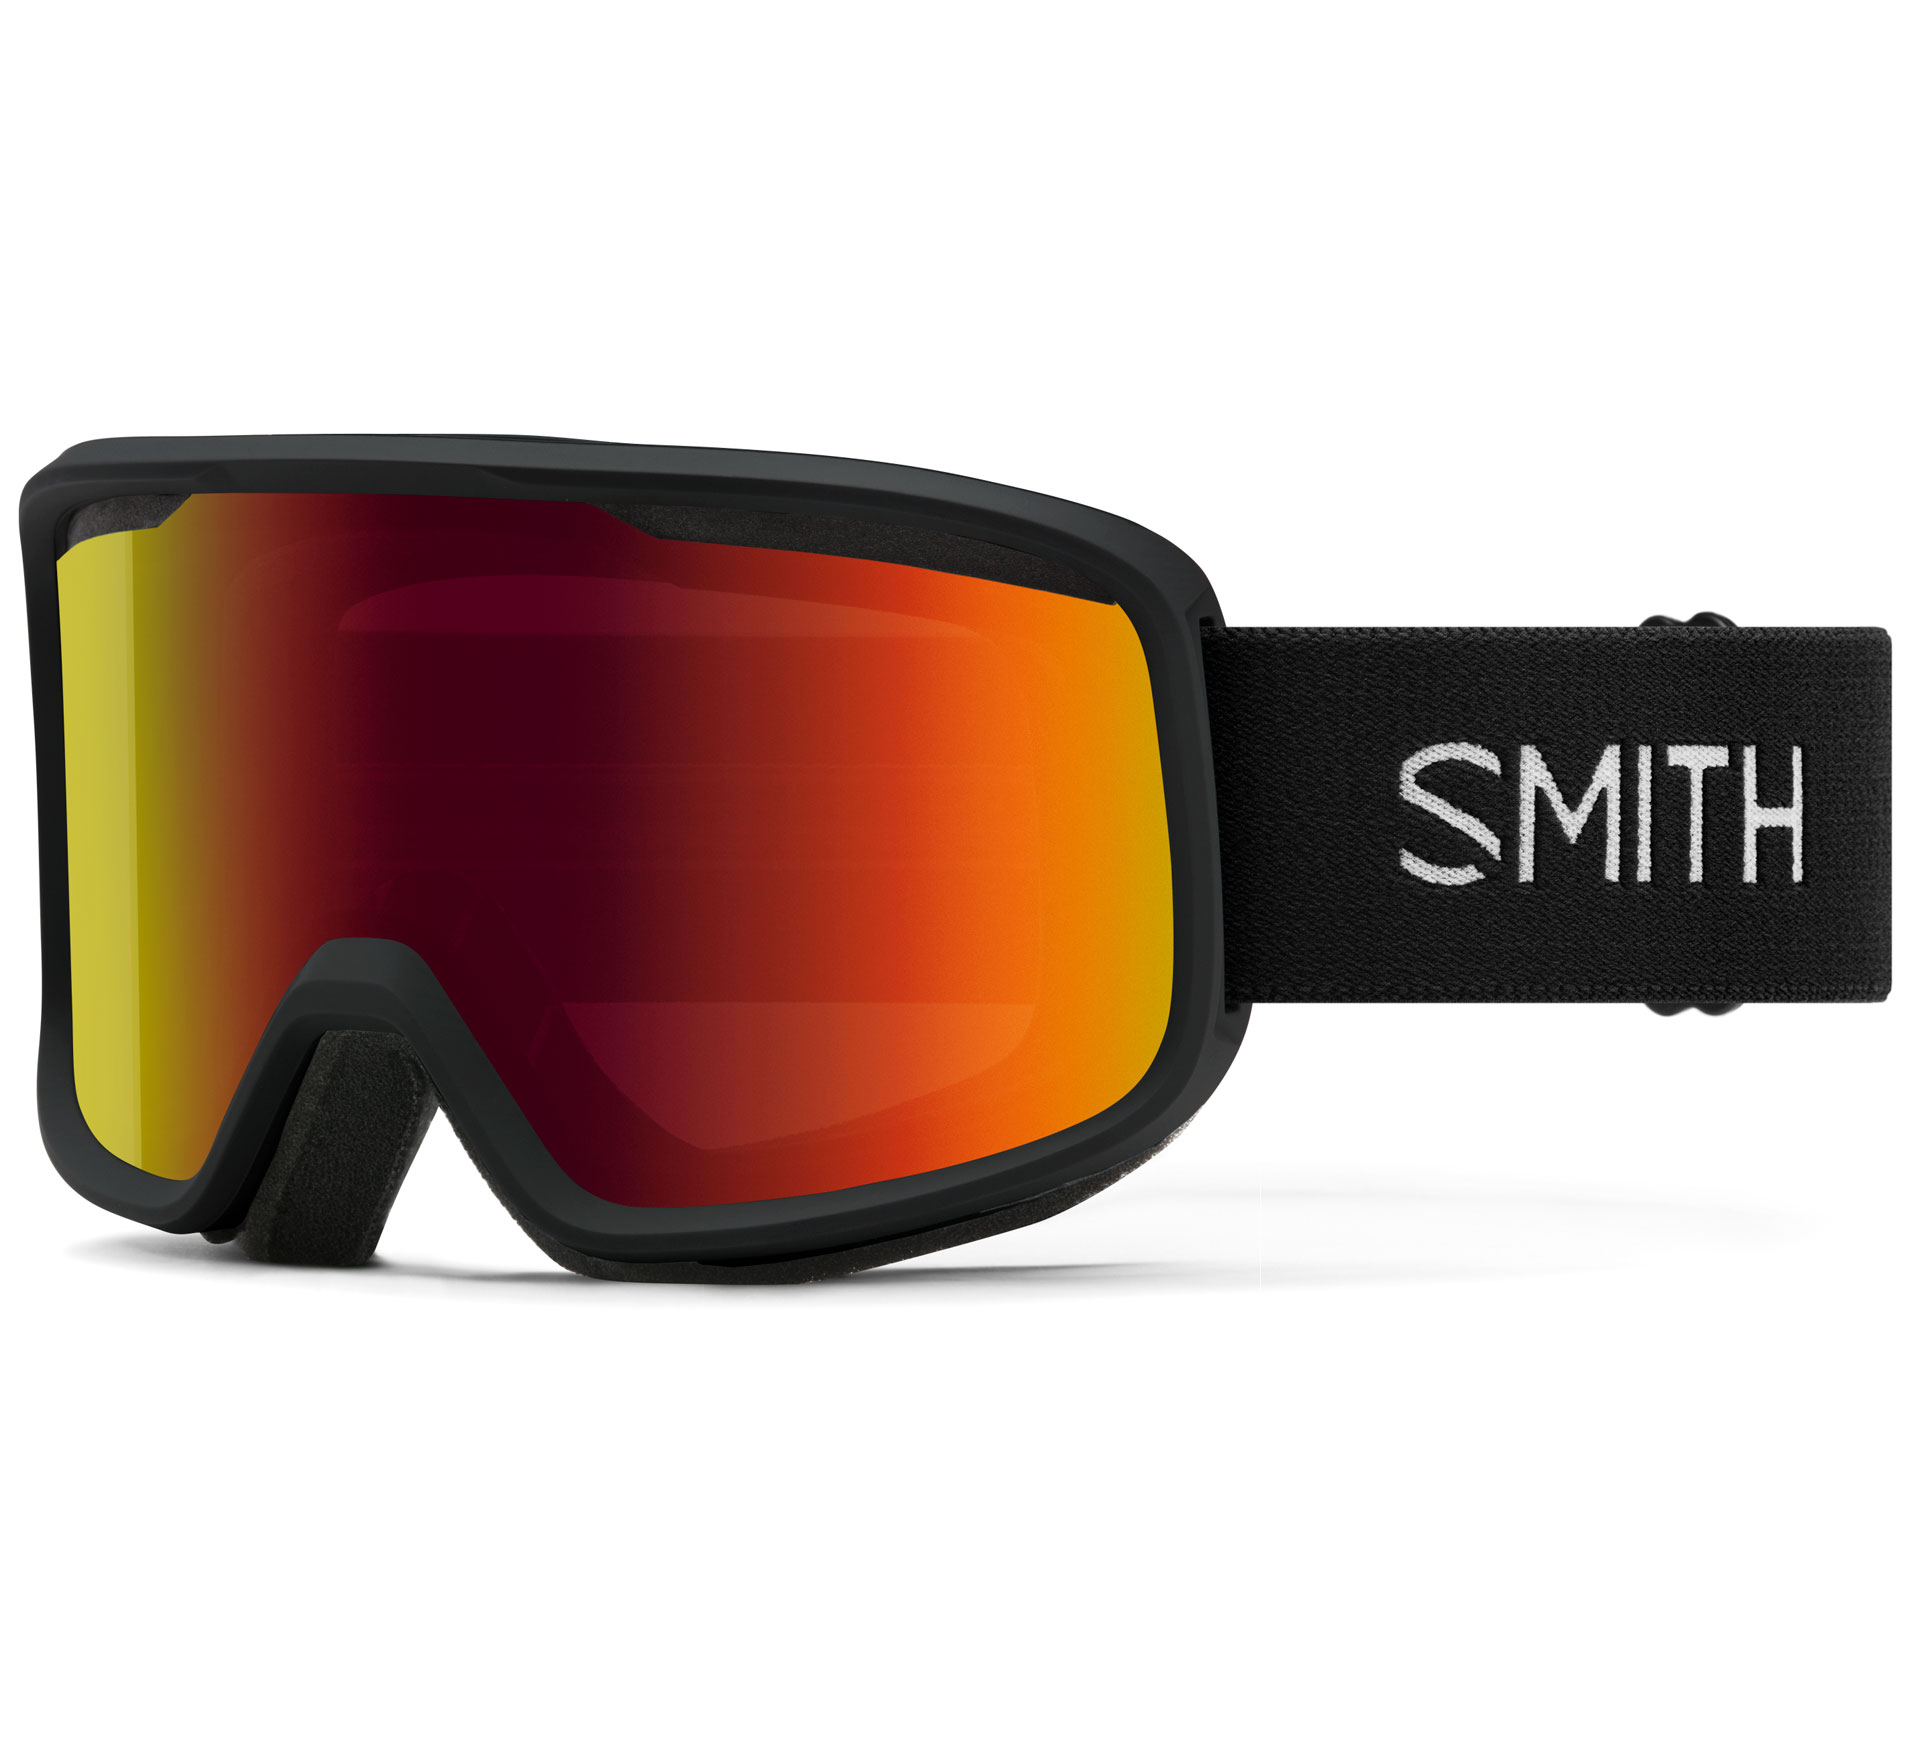 Smith Frontier Masque de ski Senior